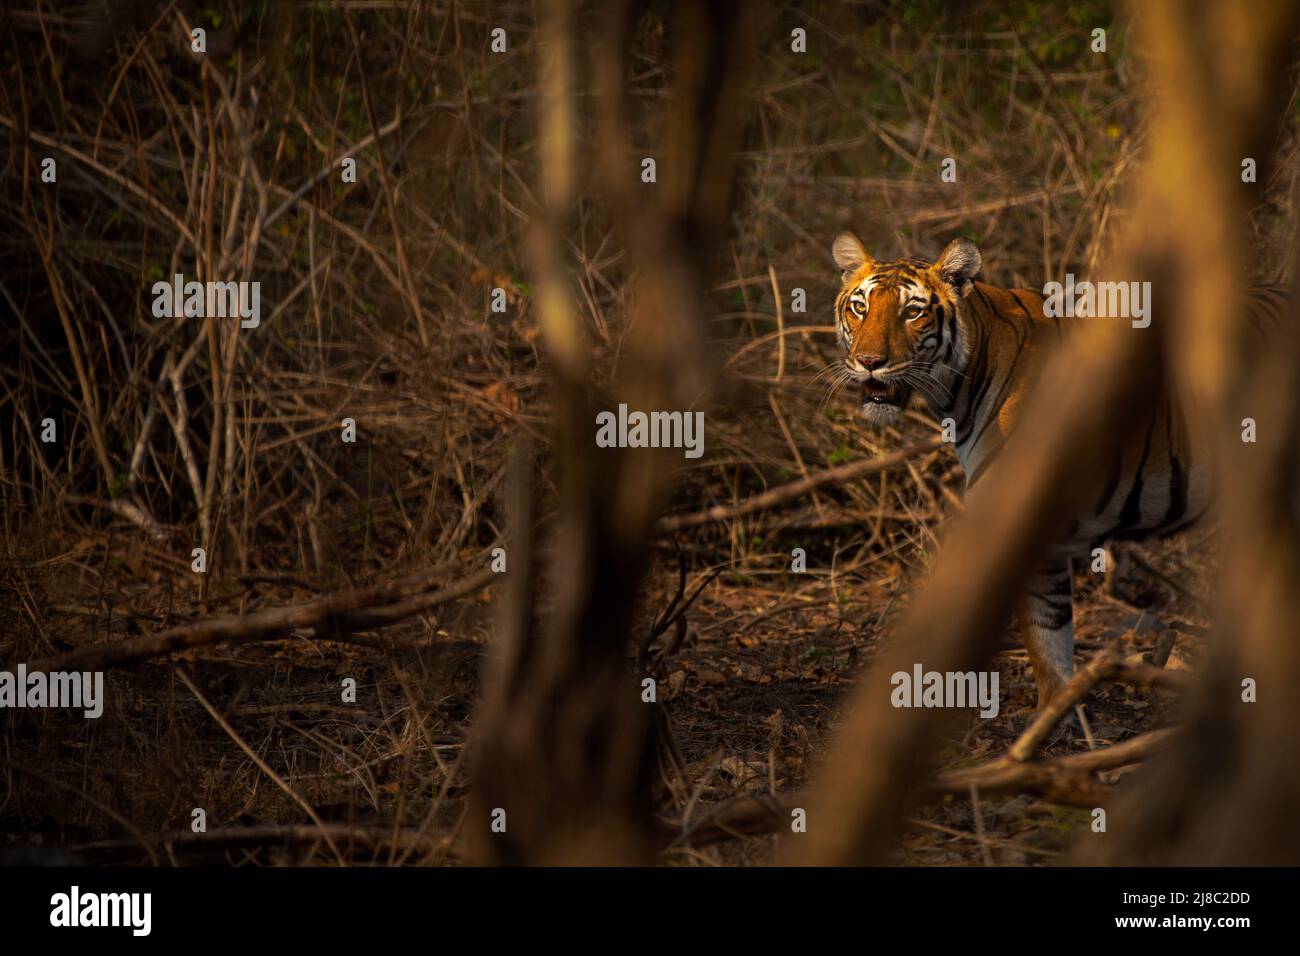 Adult Female Bengal Tiger (Panthera tigris) in Kabini Tiger Reserve, Karnataka, India Stock Photo